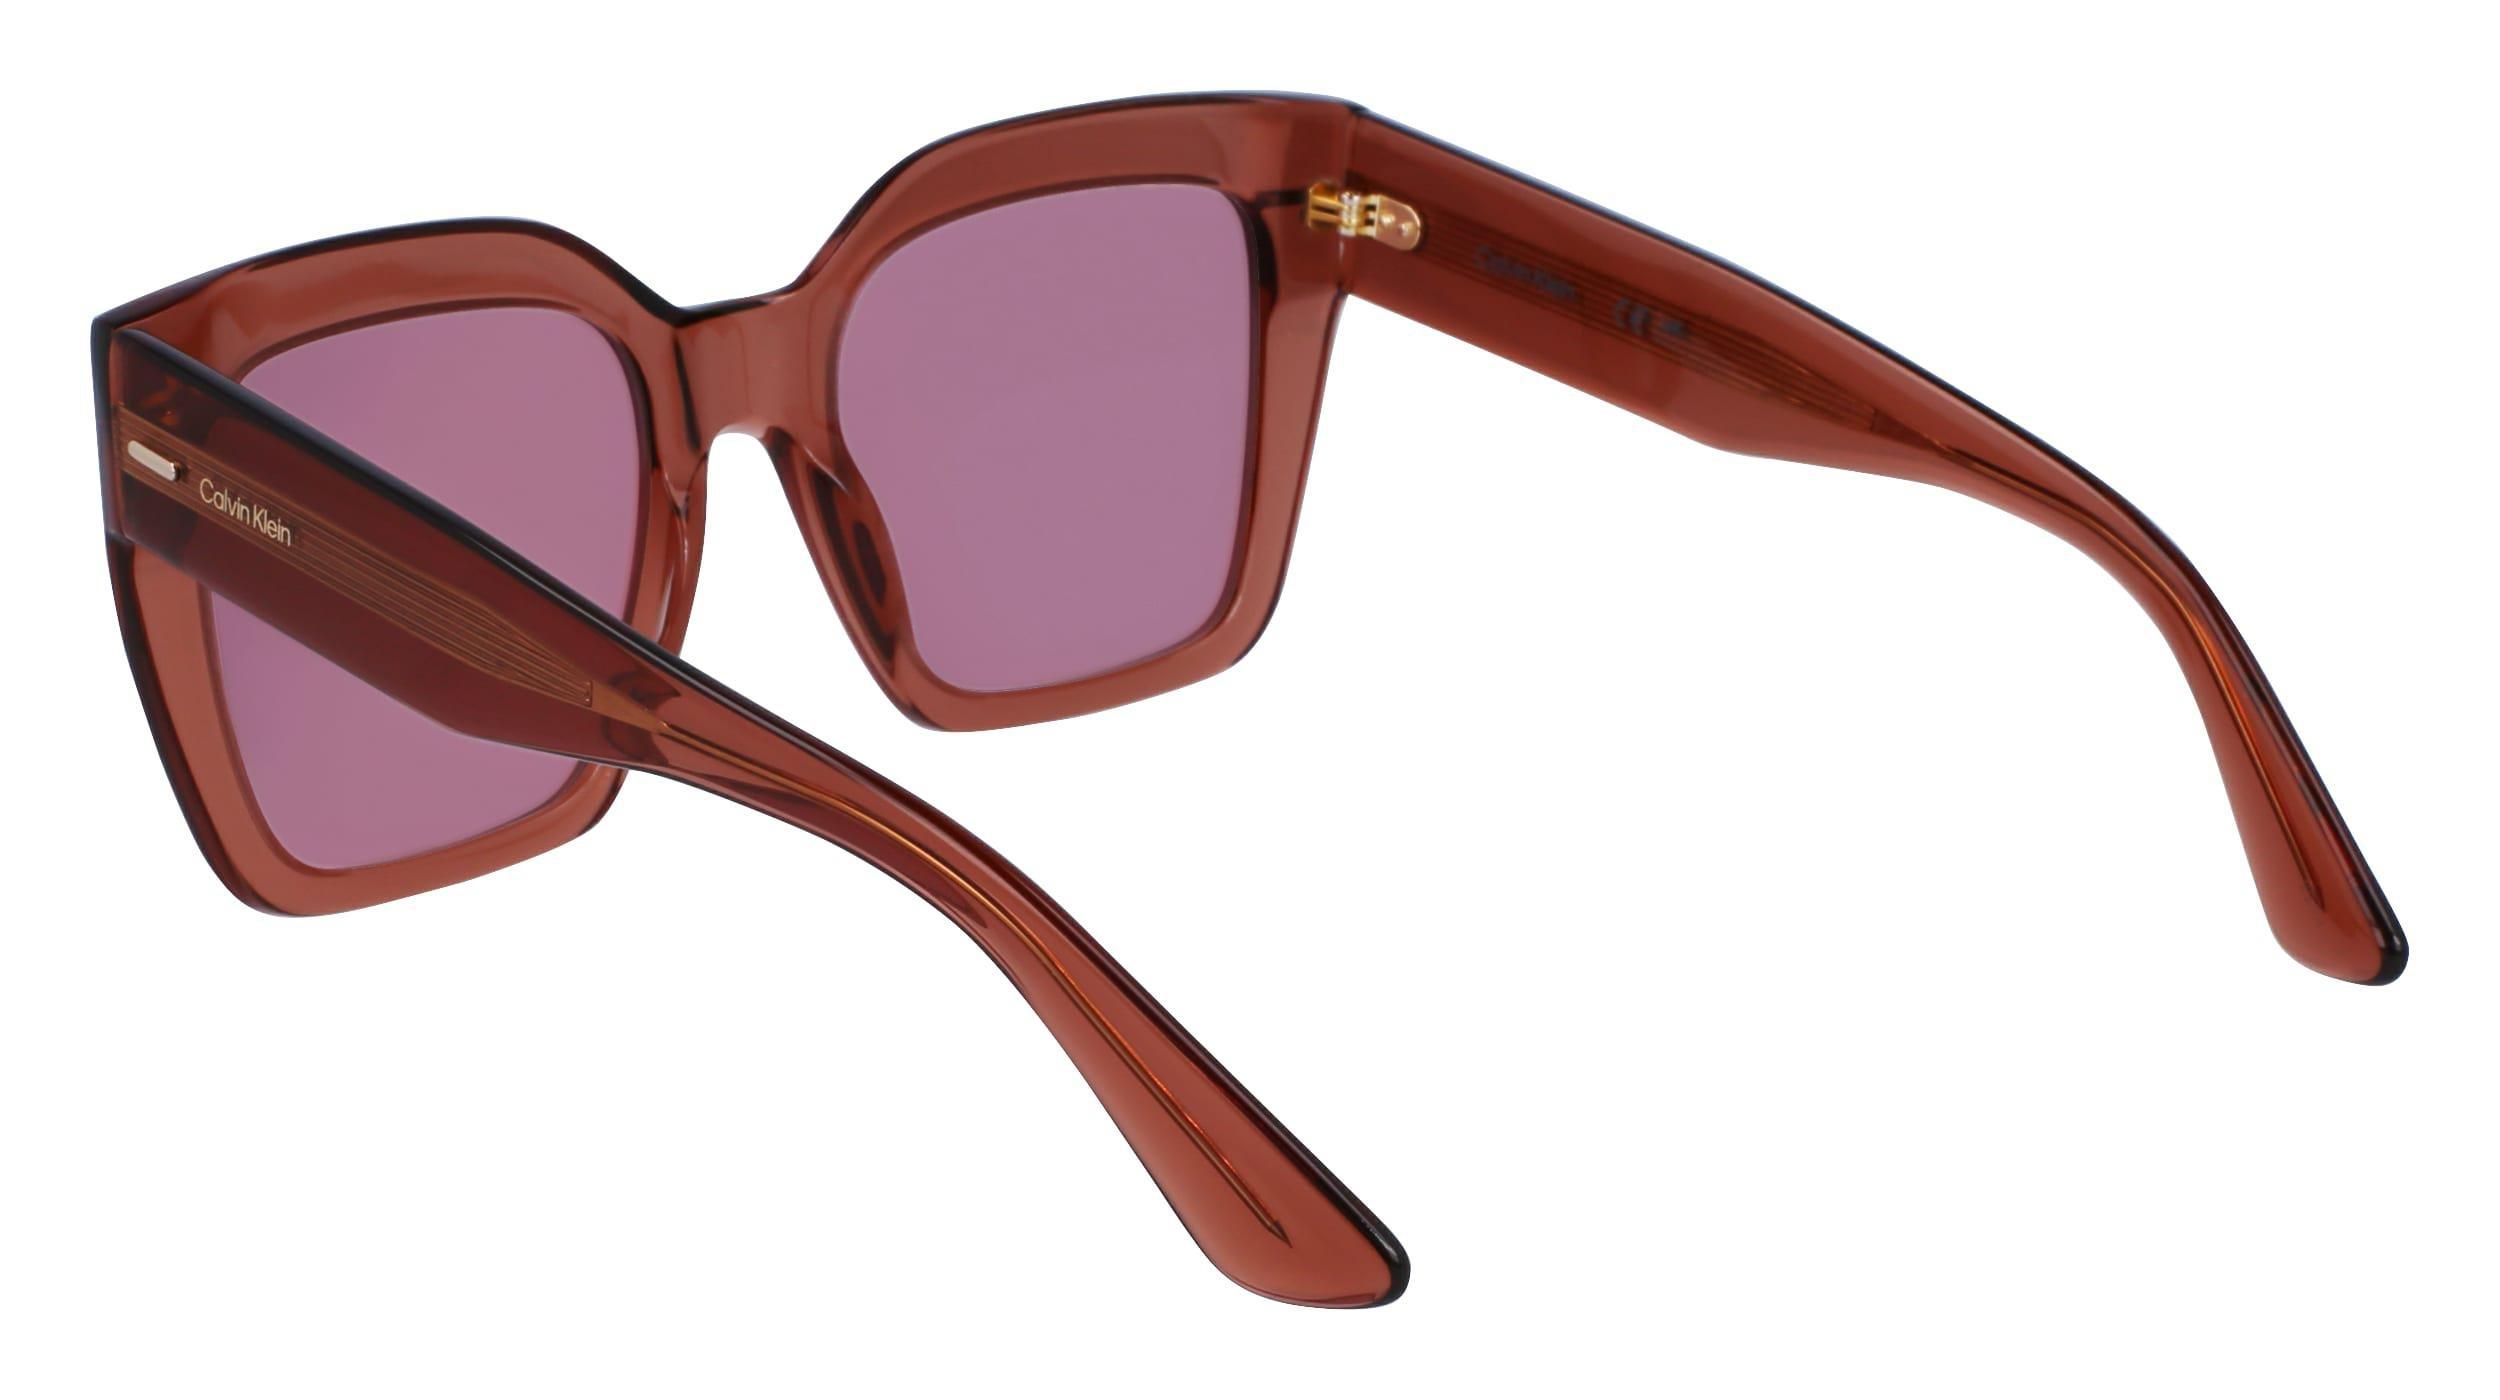 Calvin Klein - Calvin Klein Women Brown Modified Rectangle Sunglasses - Ck23508S